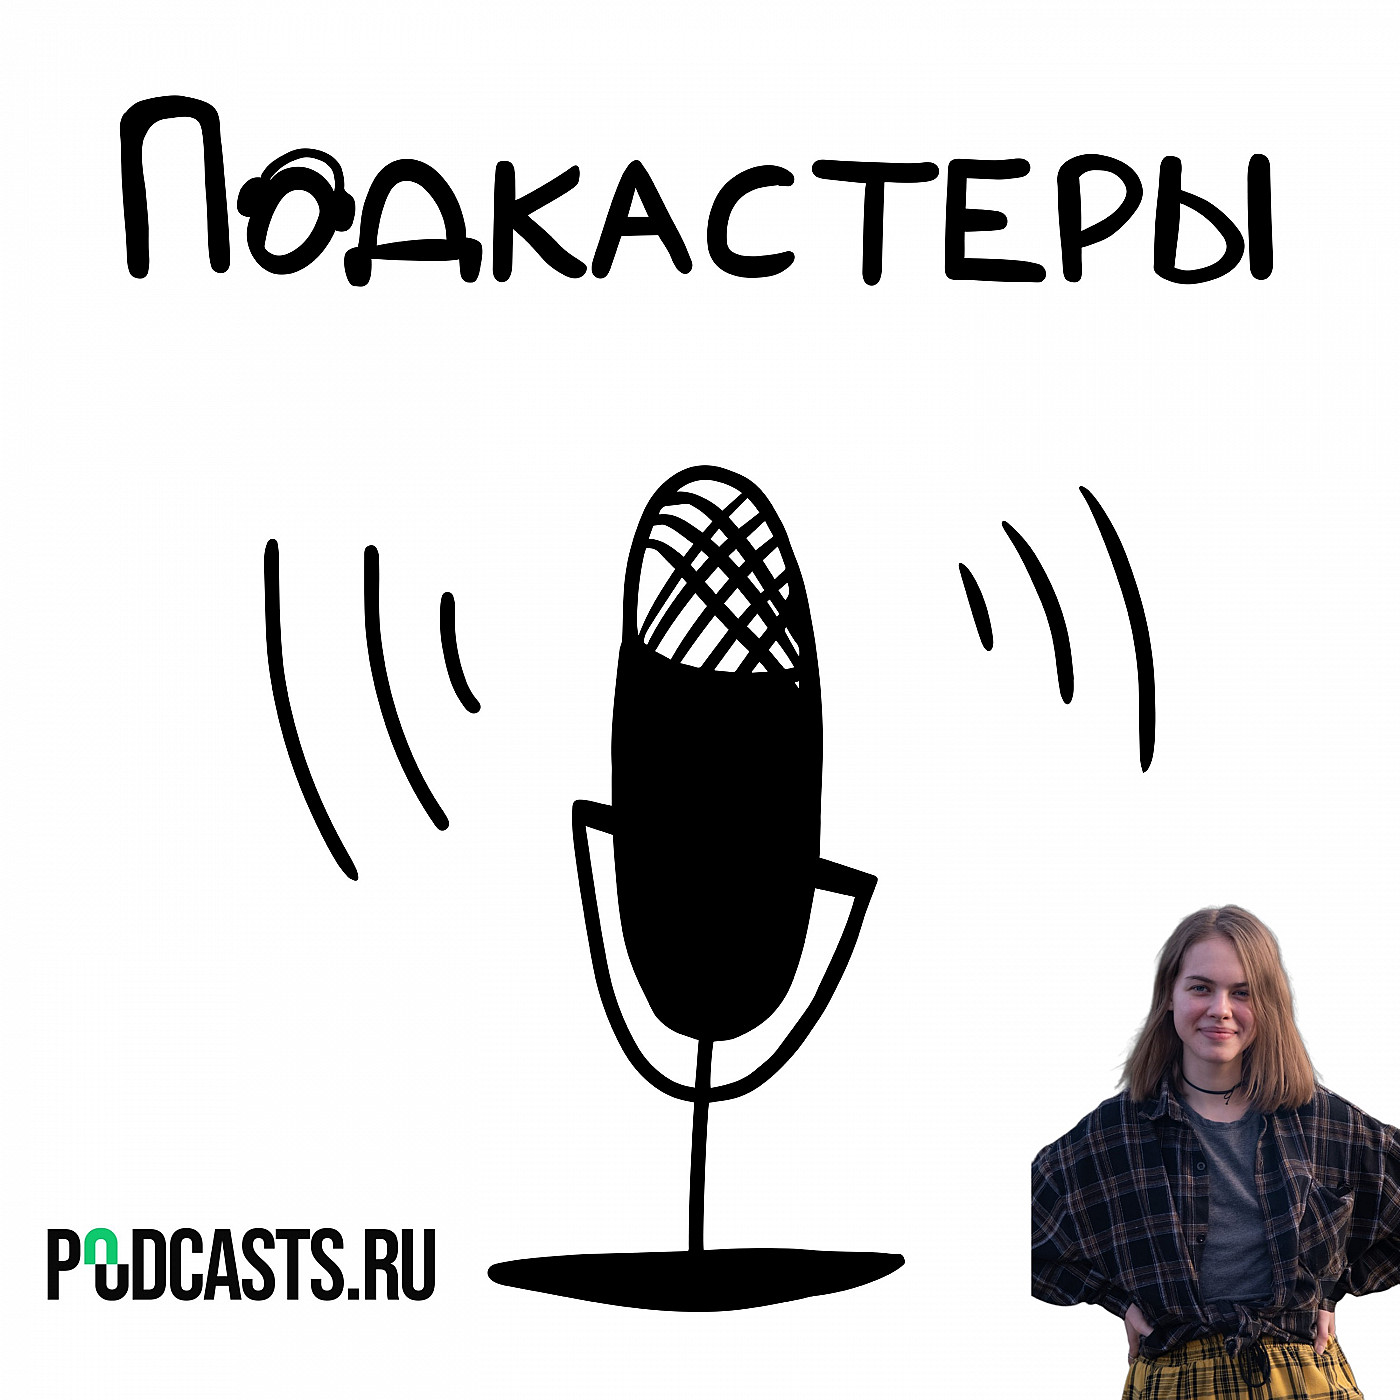 Открывая двери - путь к развитию подкастинга в России с новым главредом podcasts.ru